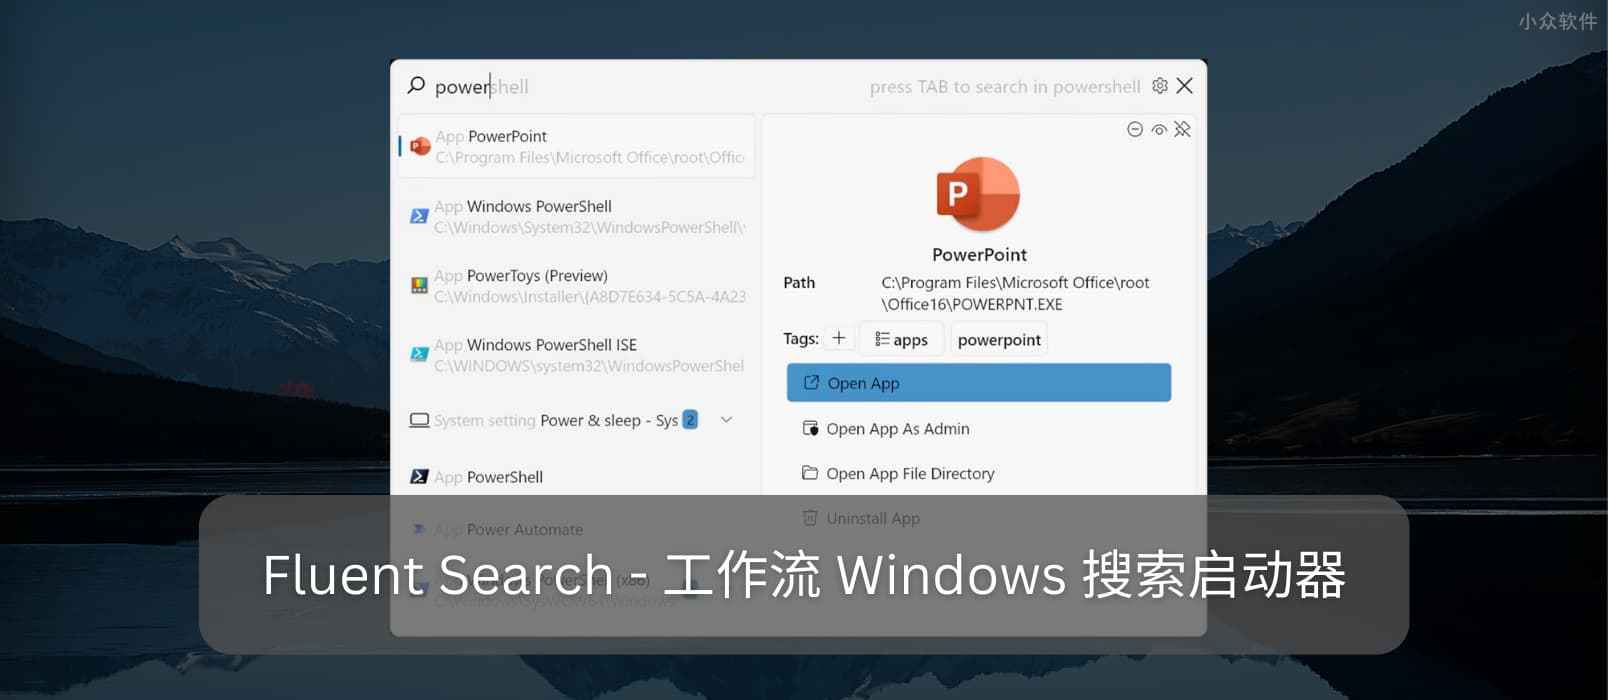 Fluent Search - 支持工作流的高颜值 Windows 搜索启动器 20